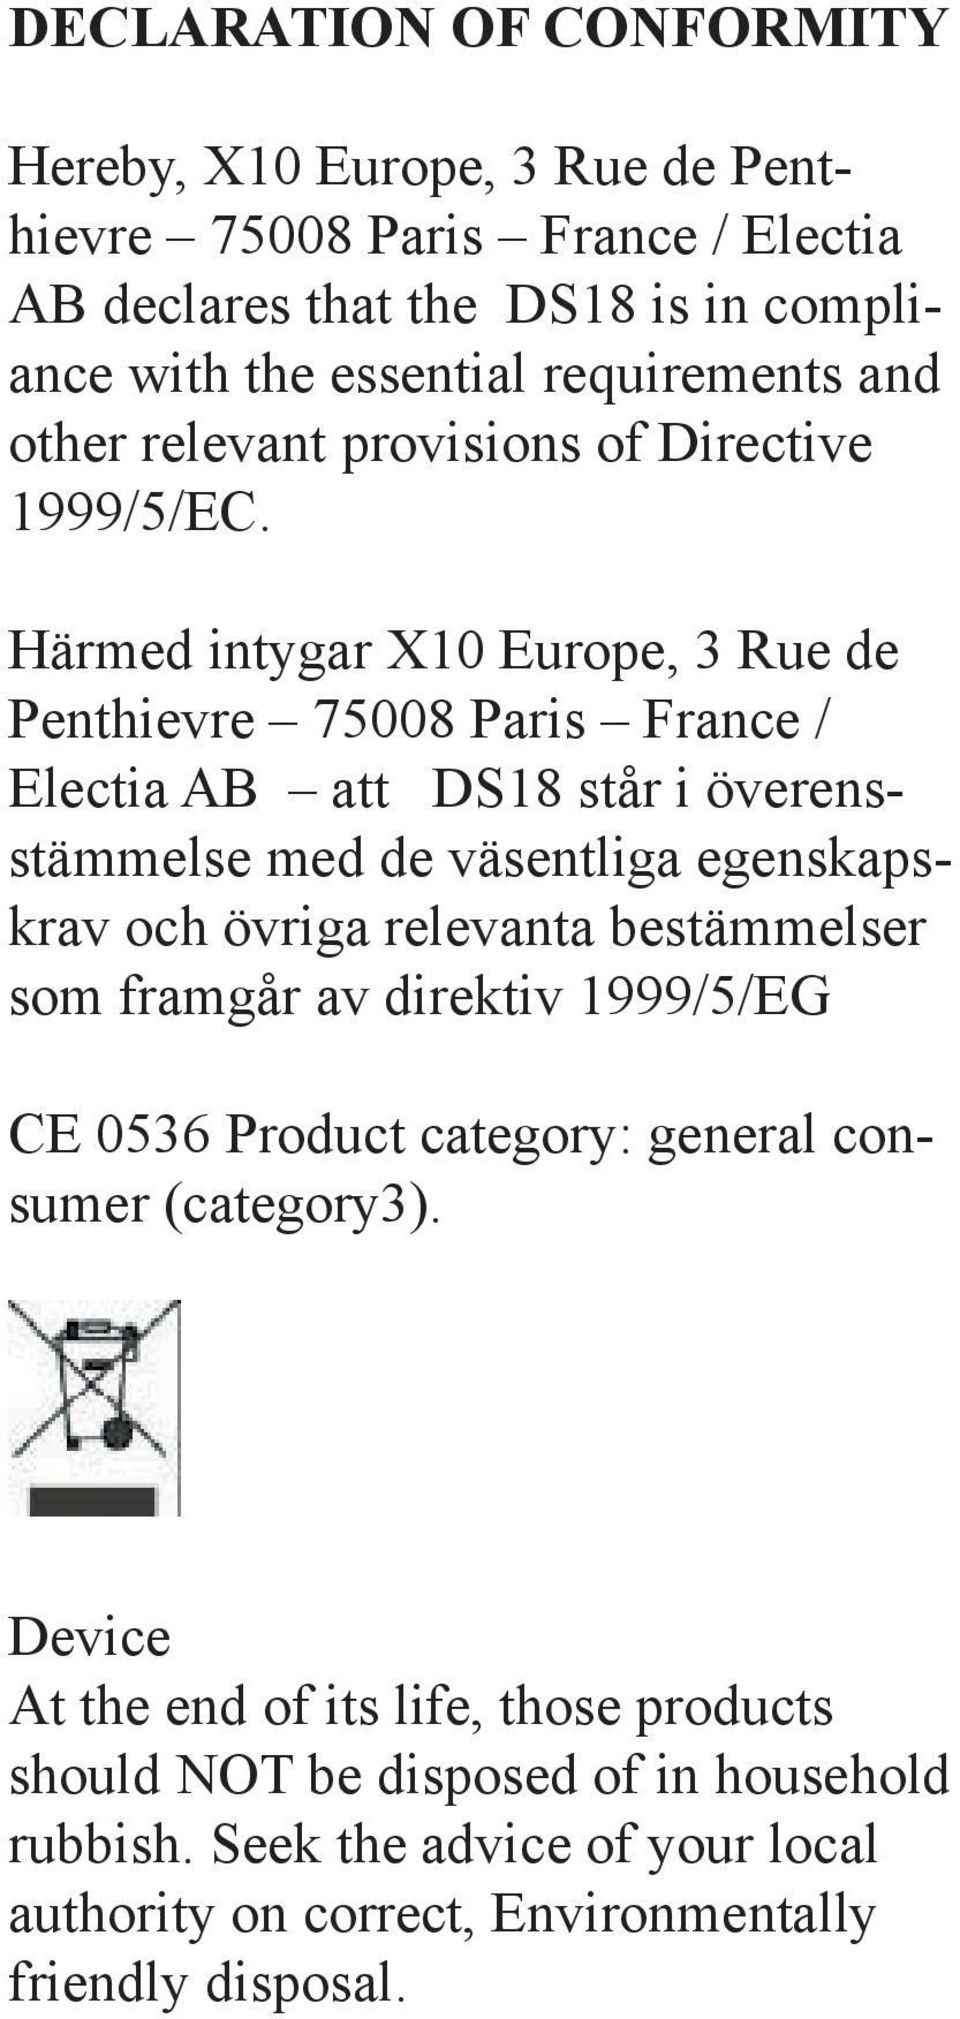 Härmed intygar X10 Europe, 3 Rue de Penthievre 75008 Paris France / Electia AB att DS18 står i överensstämmelse med de väsentliga egenskapskrav och övriga relevanta